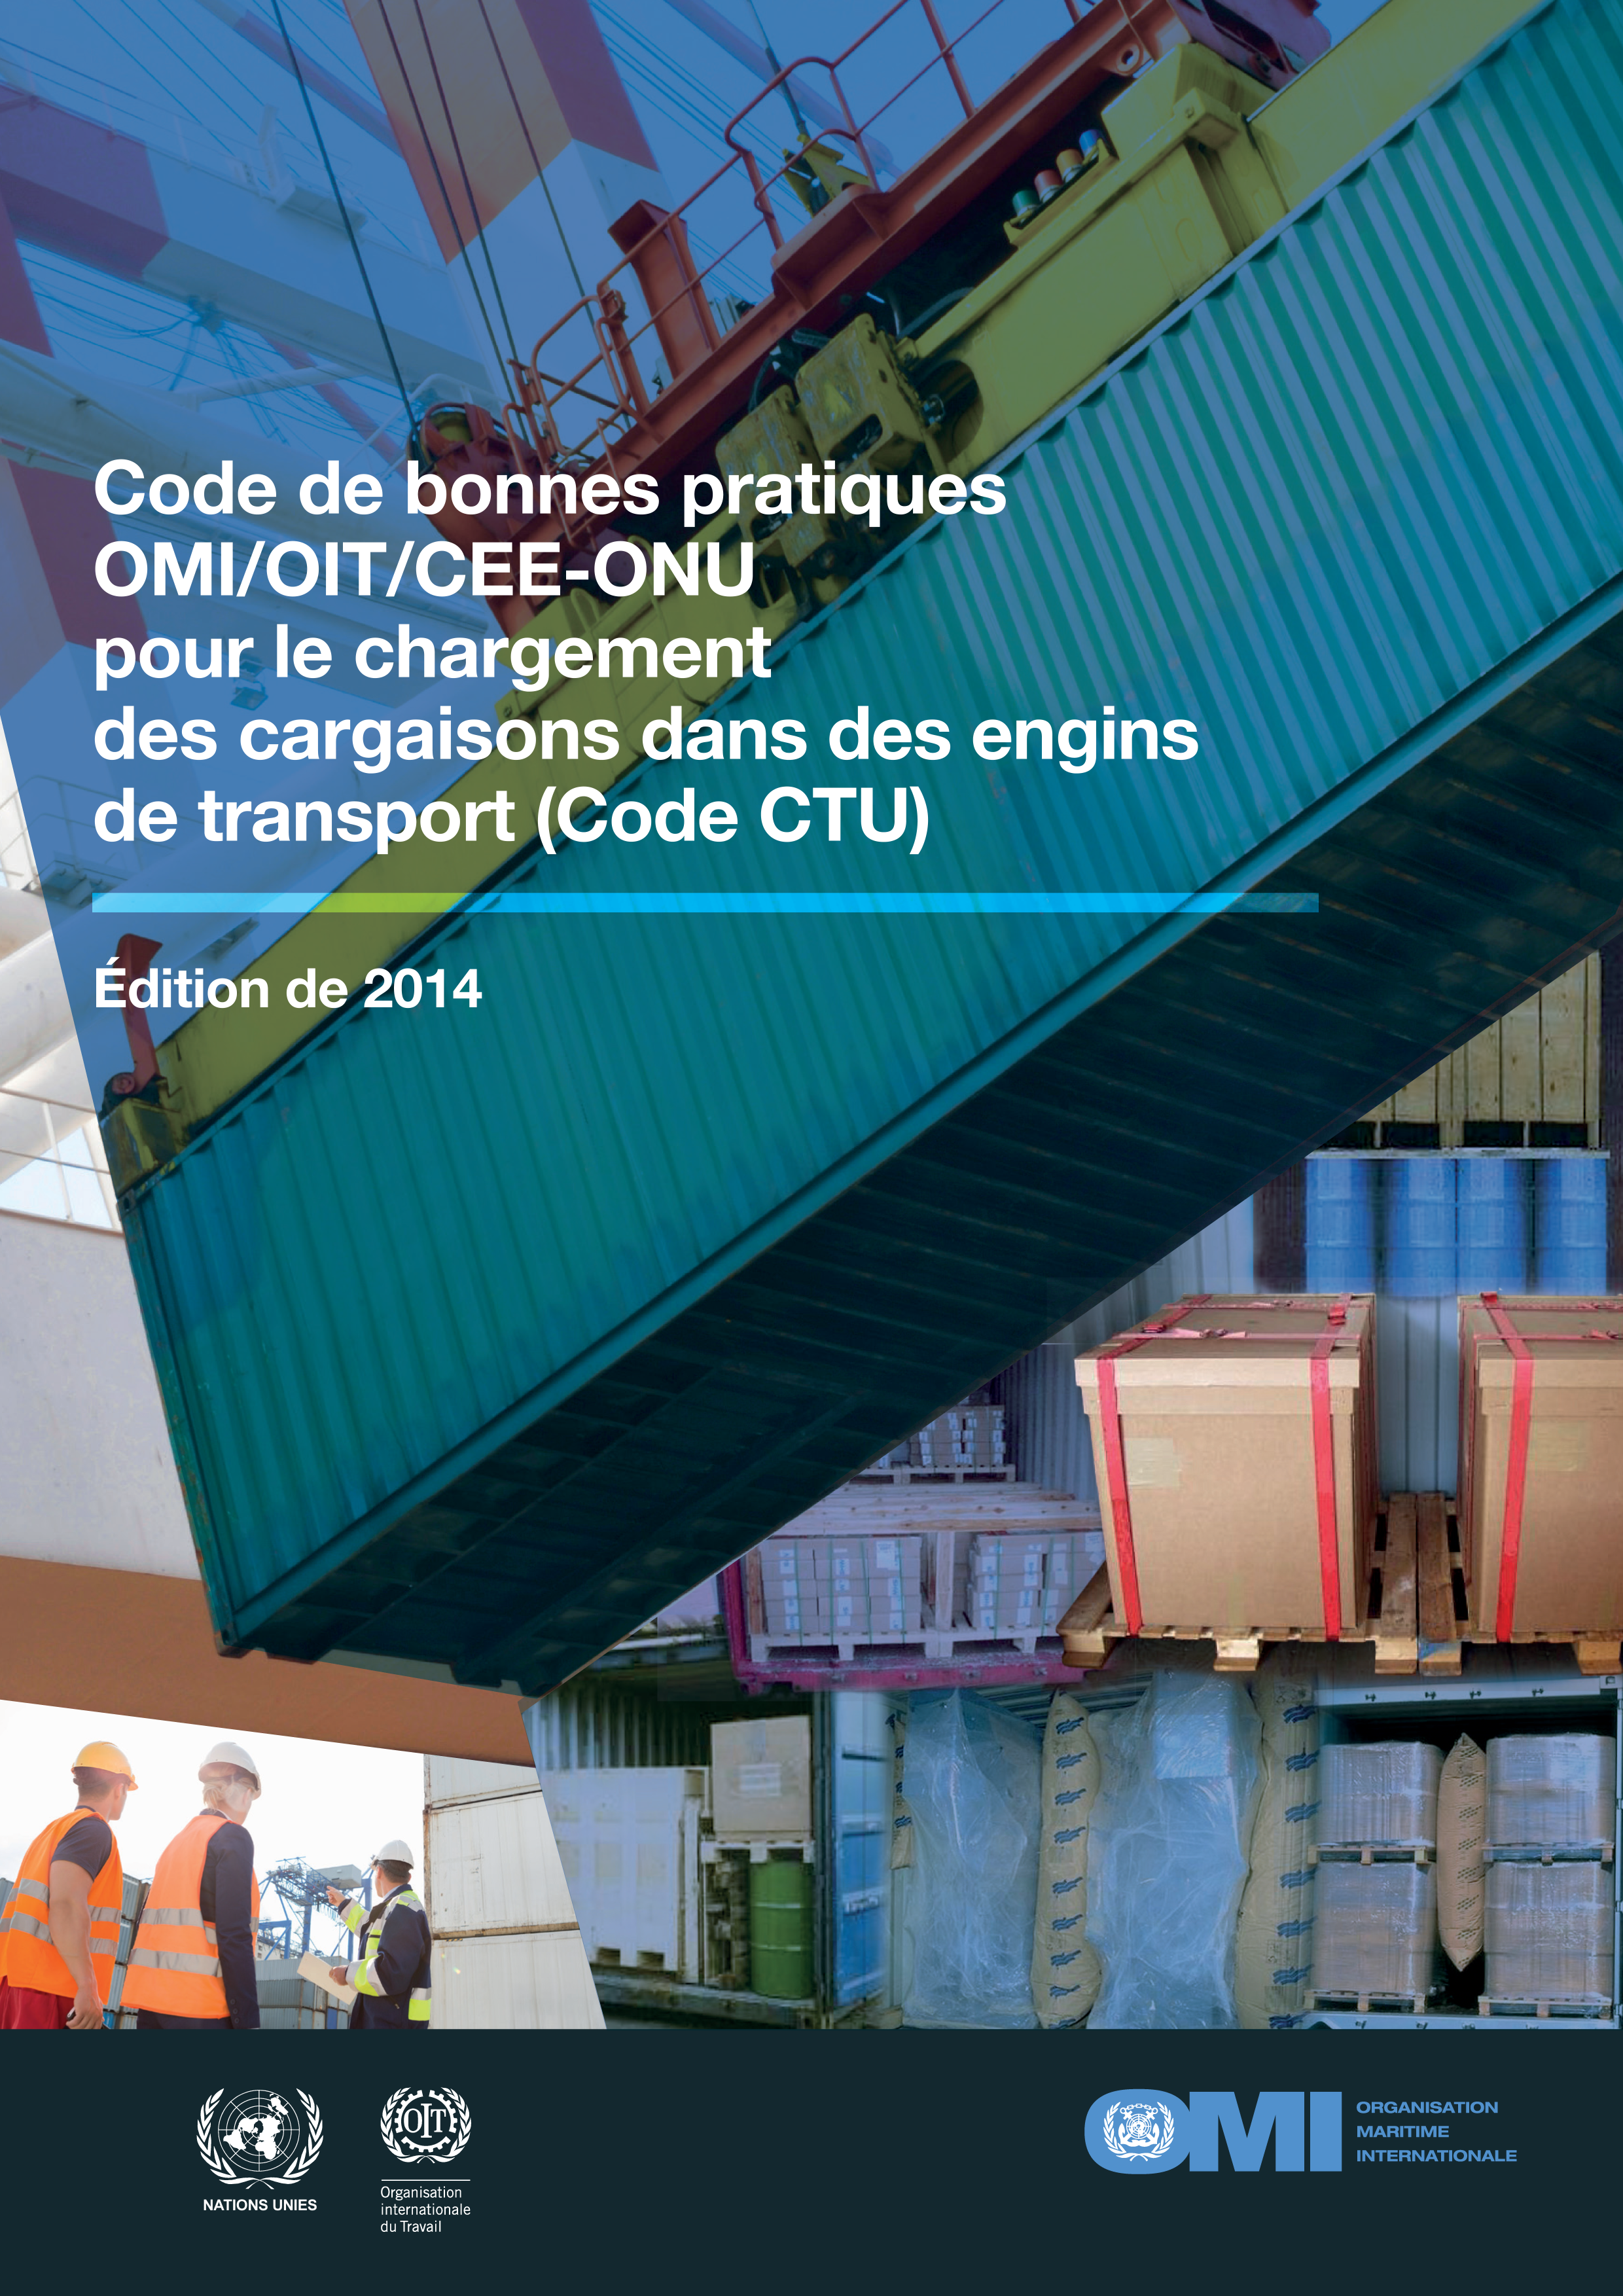 Code de bonnes pratiques OMI/OIT/CEE-ONU pour le chargement des cargaisons dans des engins de transport (Code CTU)